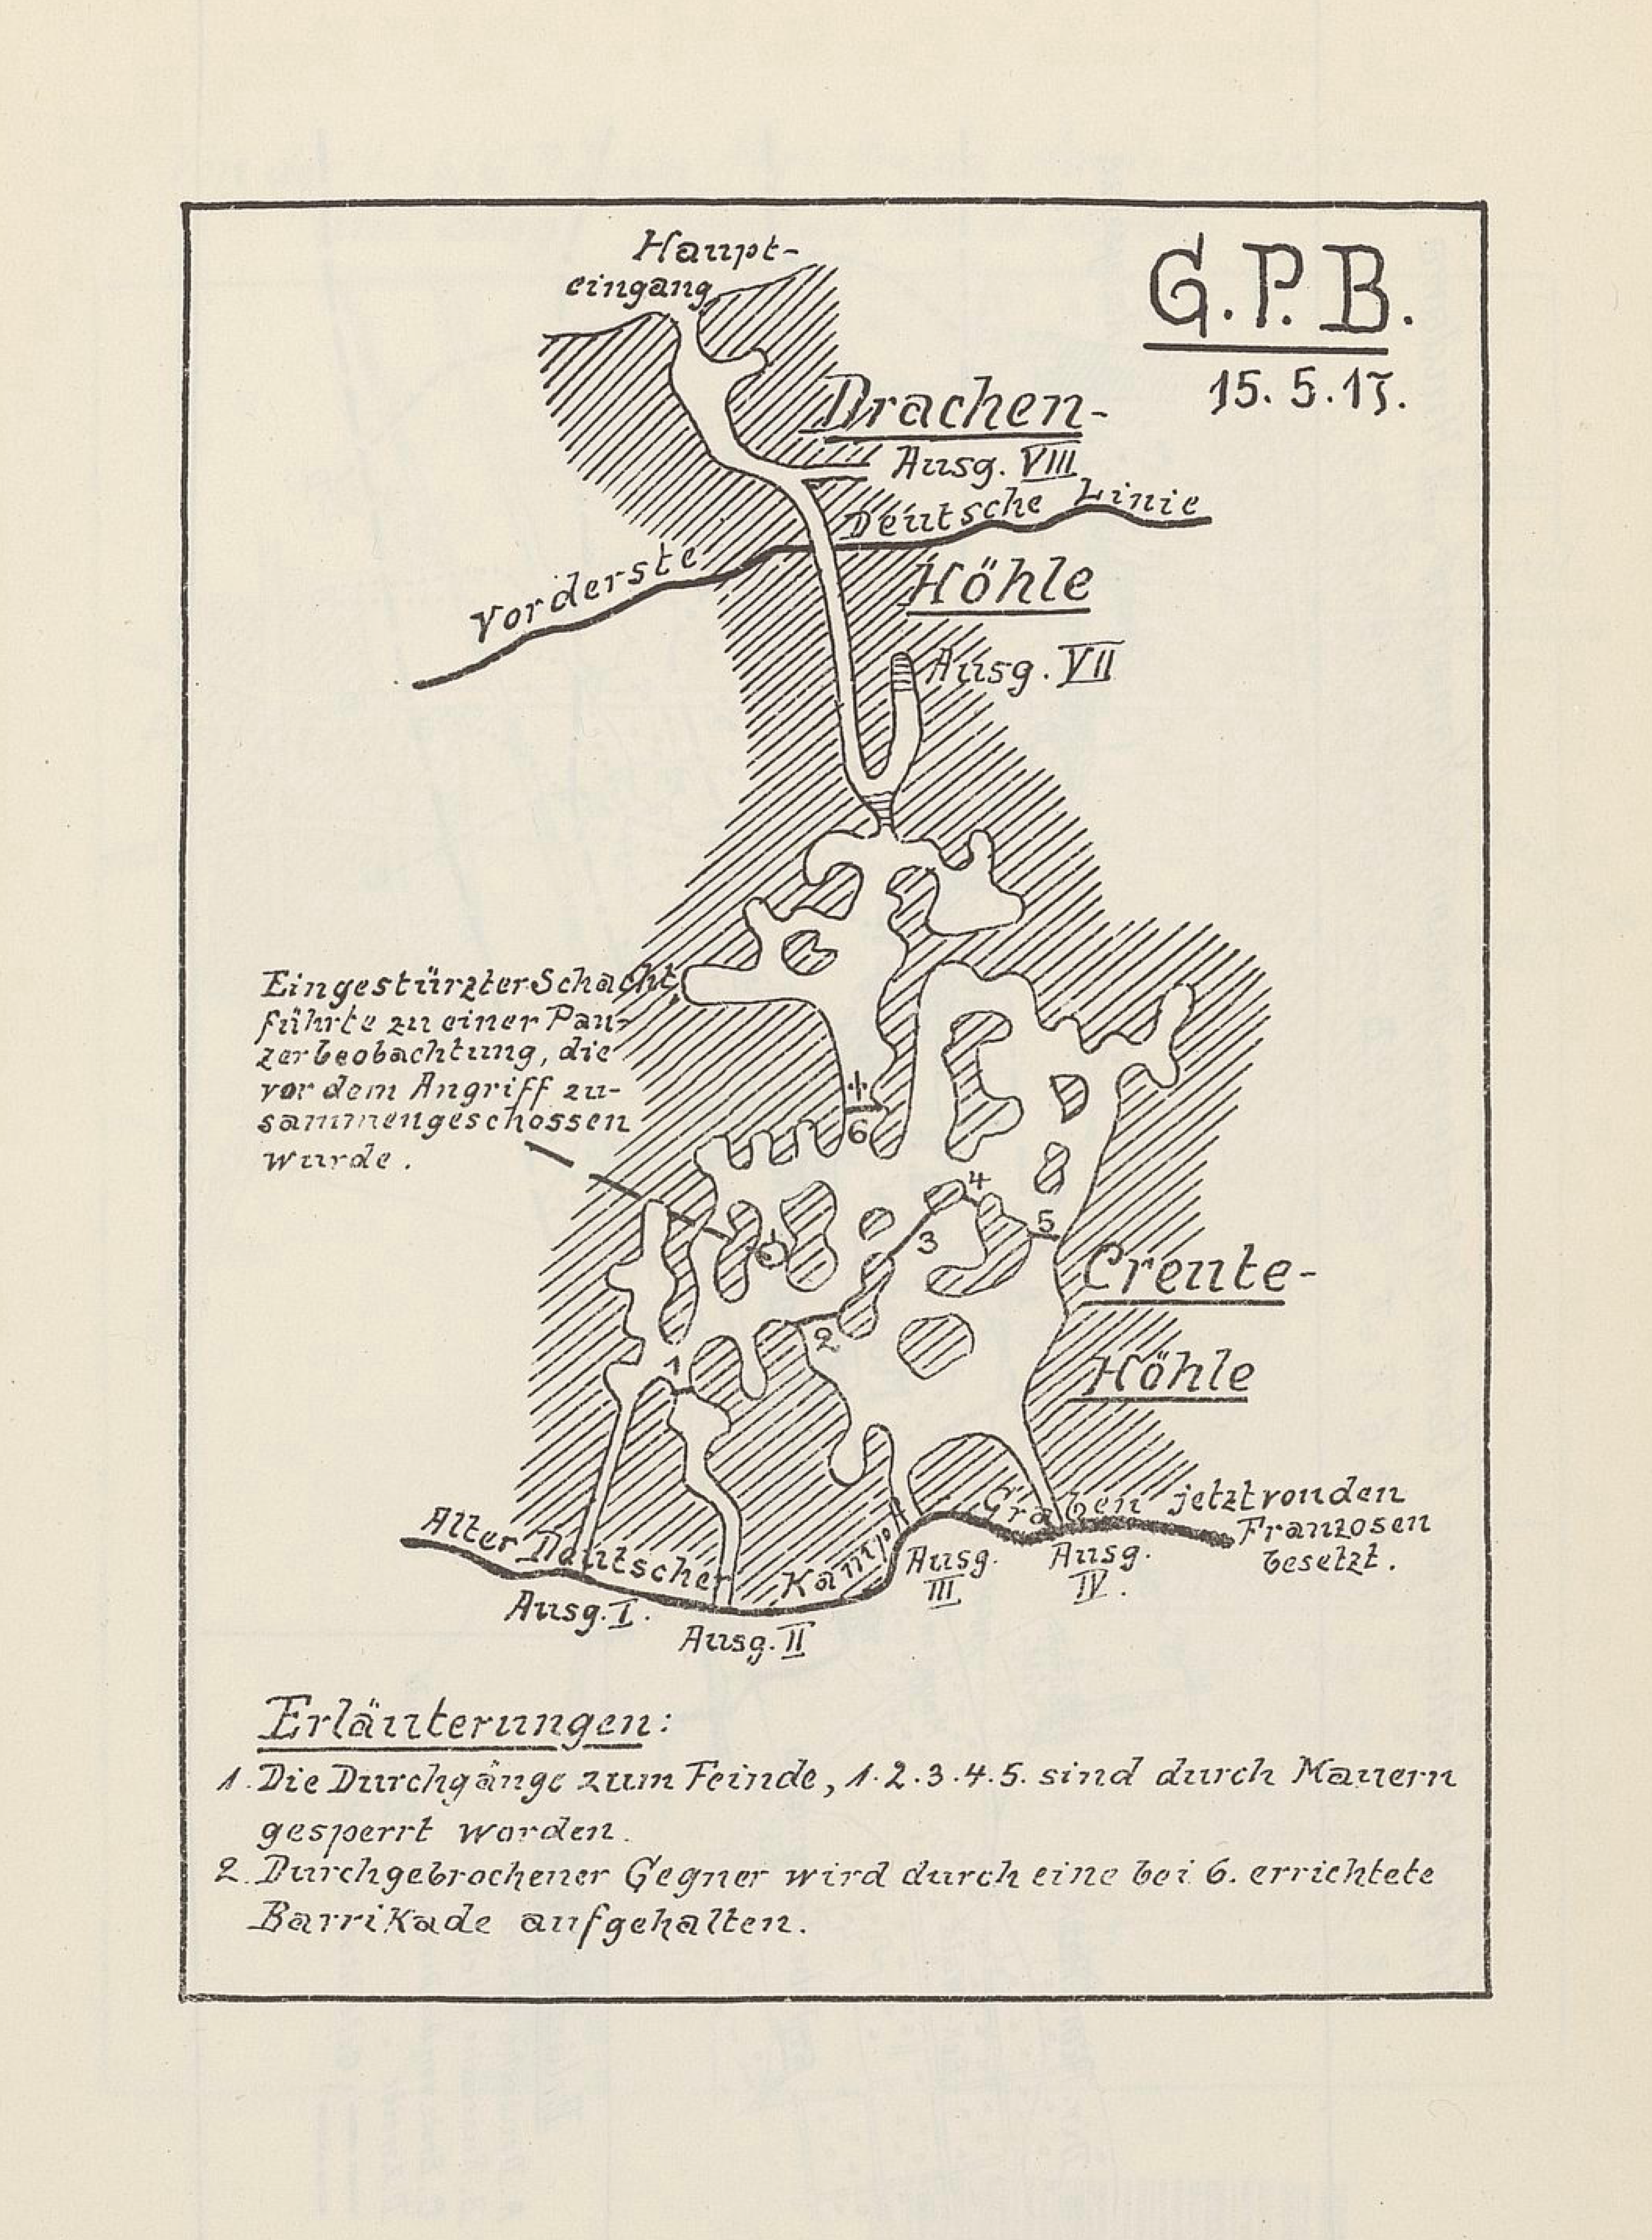 Creute-Höhle et Drachen-Höhle le 15 mai 1917 ©Archives allemandes